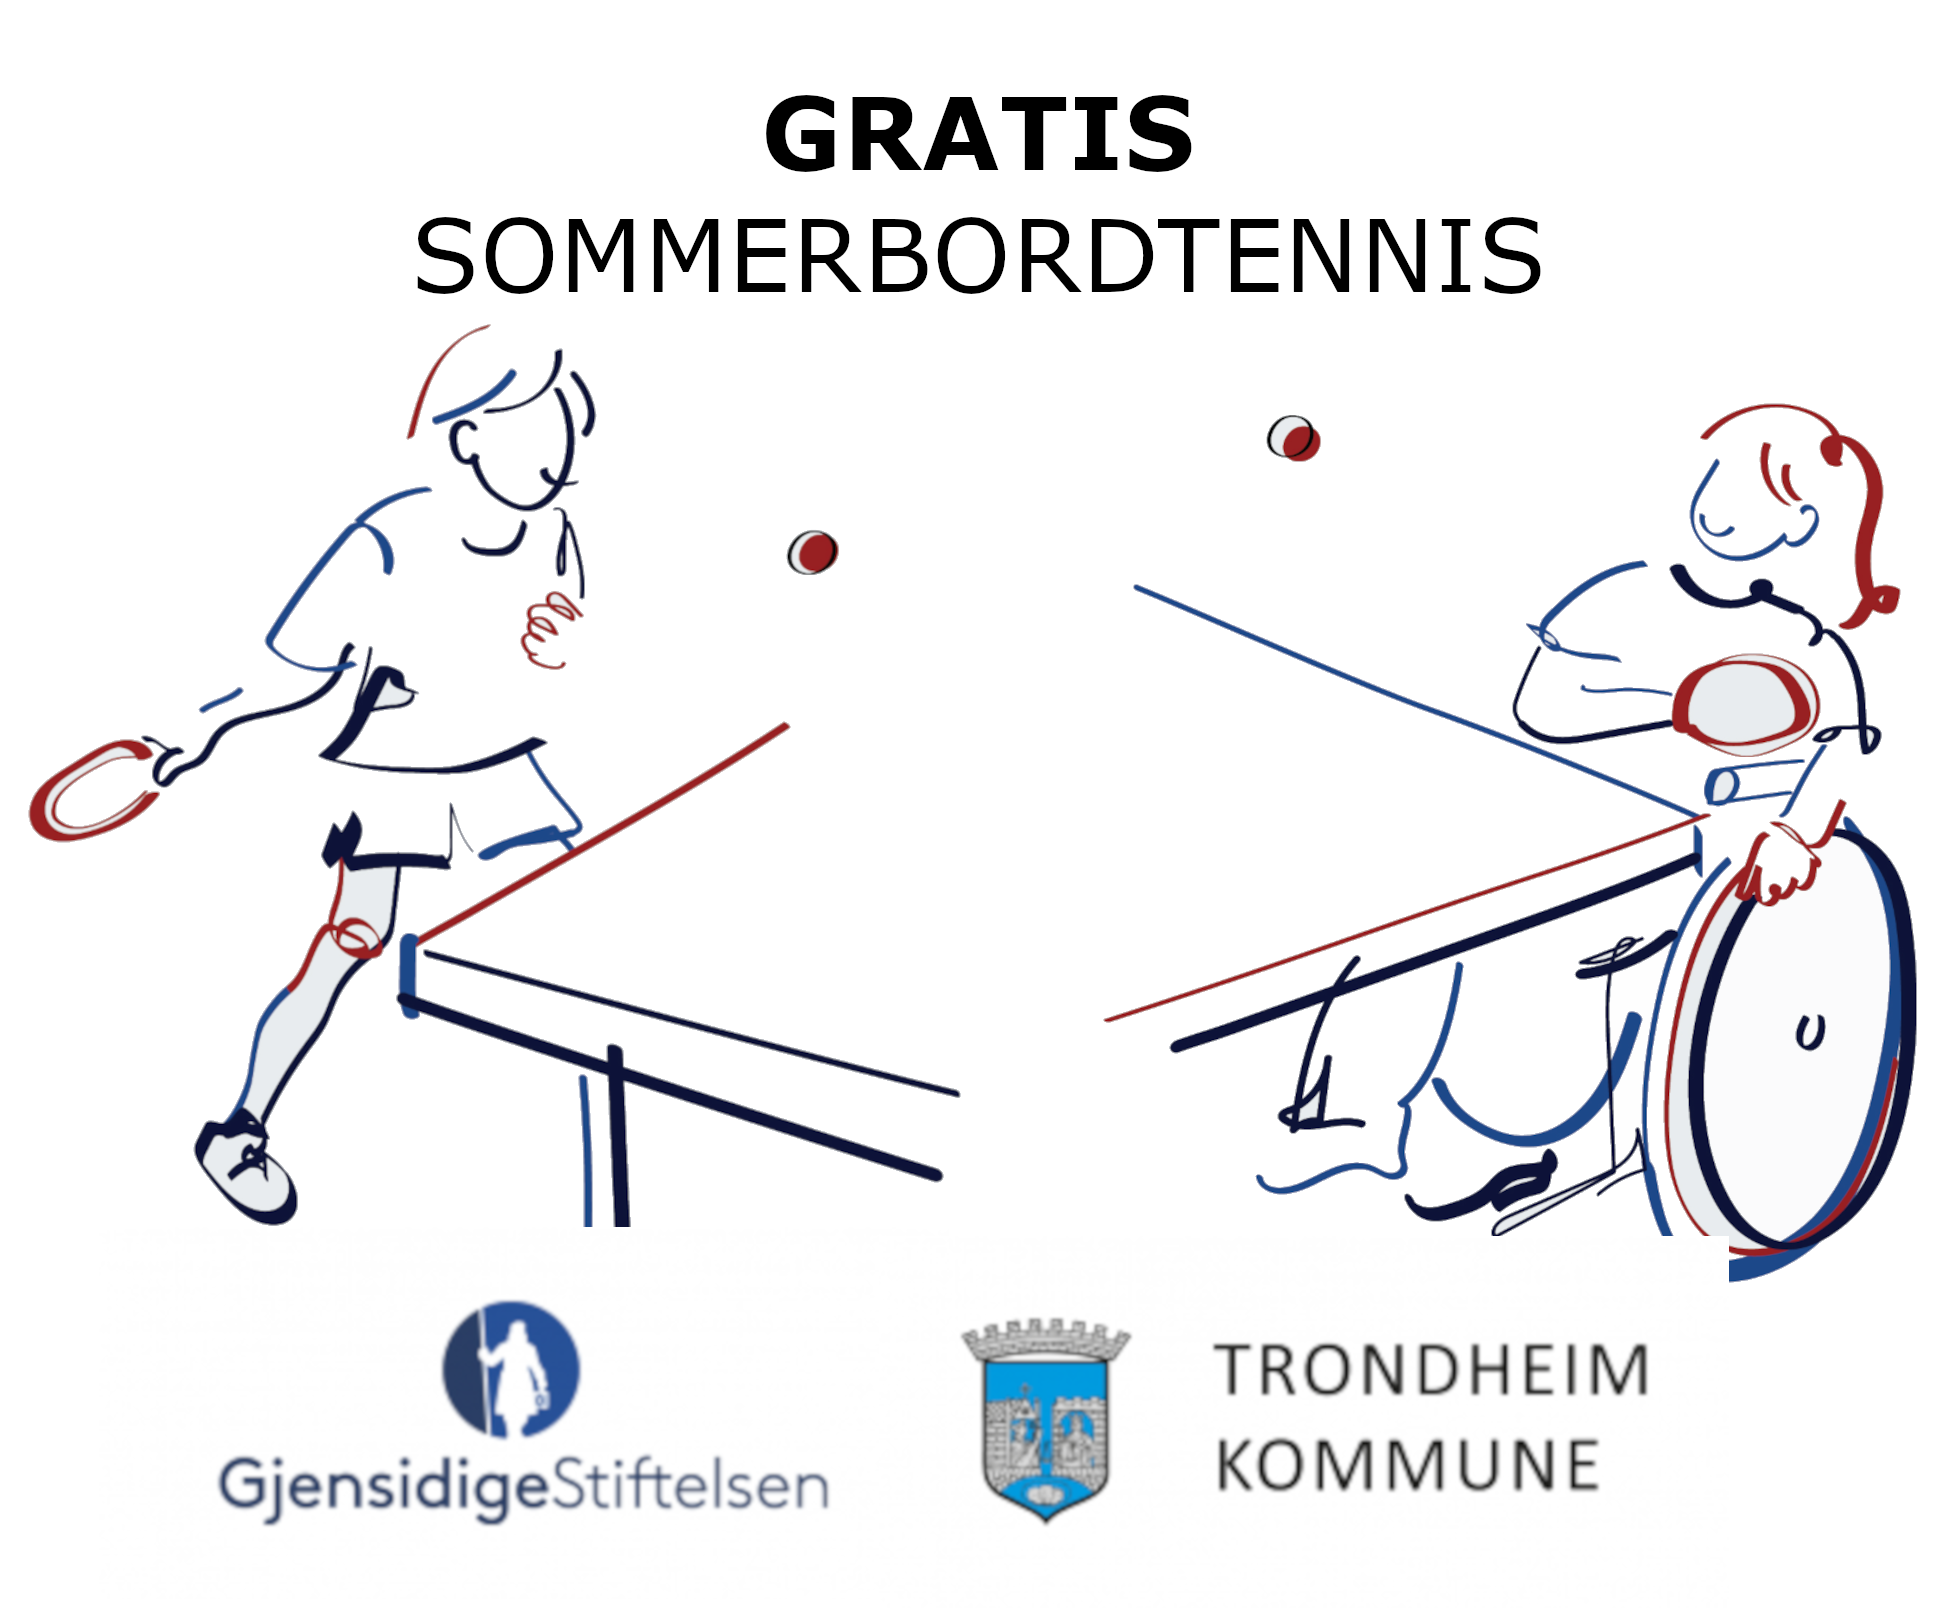 Gratis bordtennis for alle barn og unge i sommer i Trøndelag!